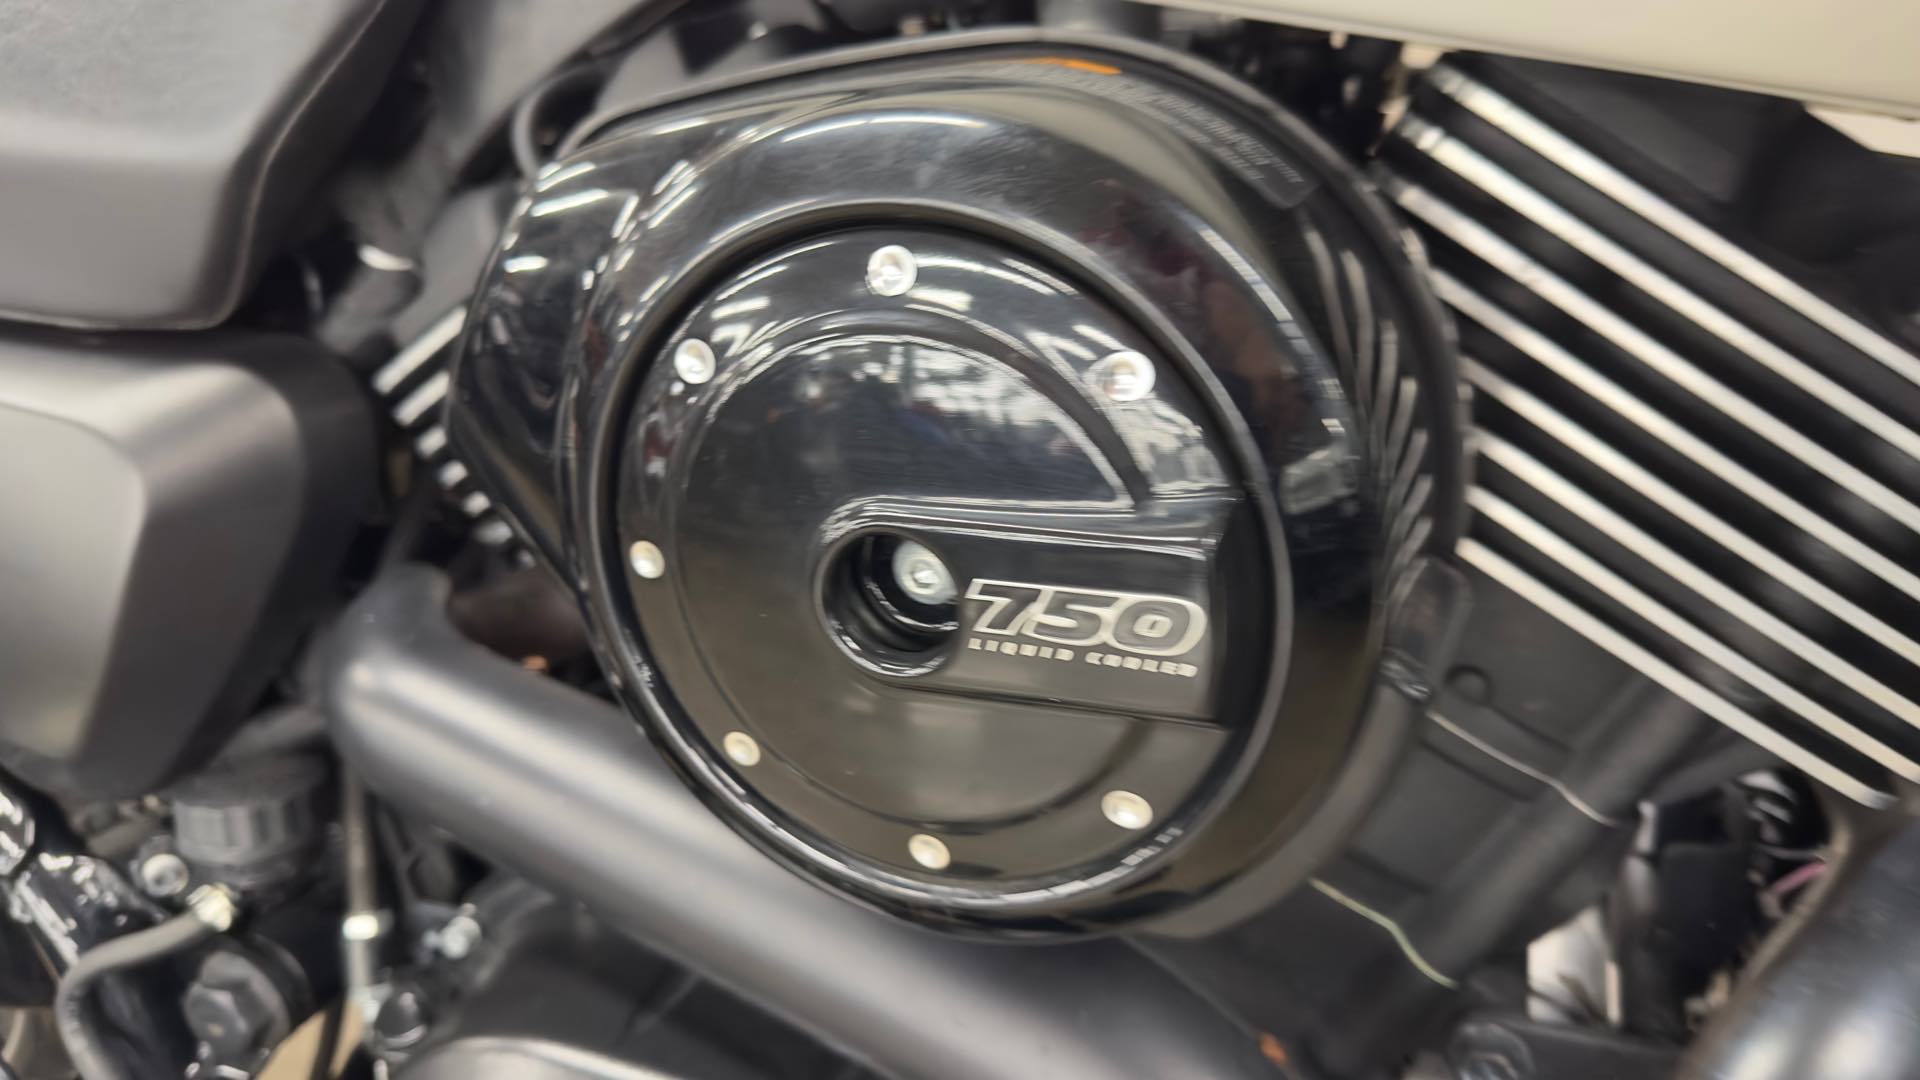 2018 Harley-Davidson Street 750 at ATVs and More